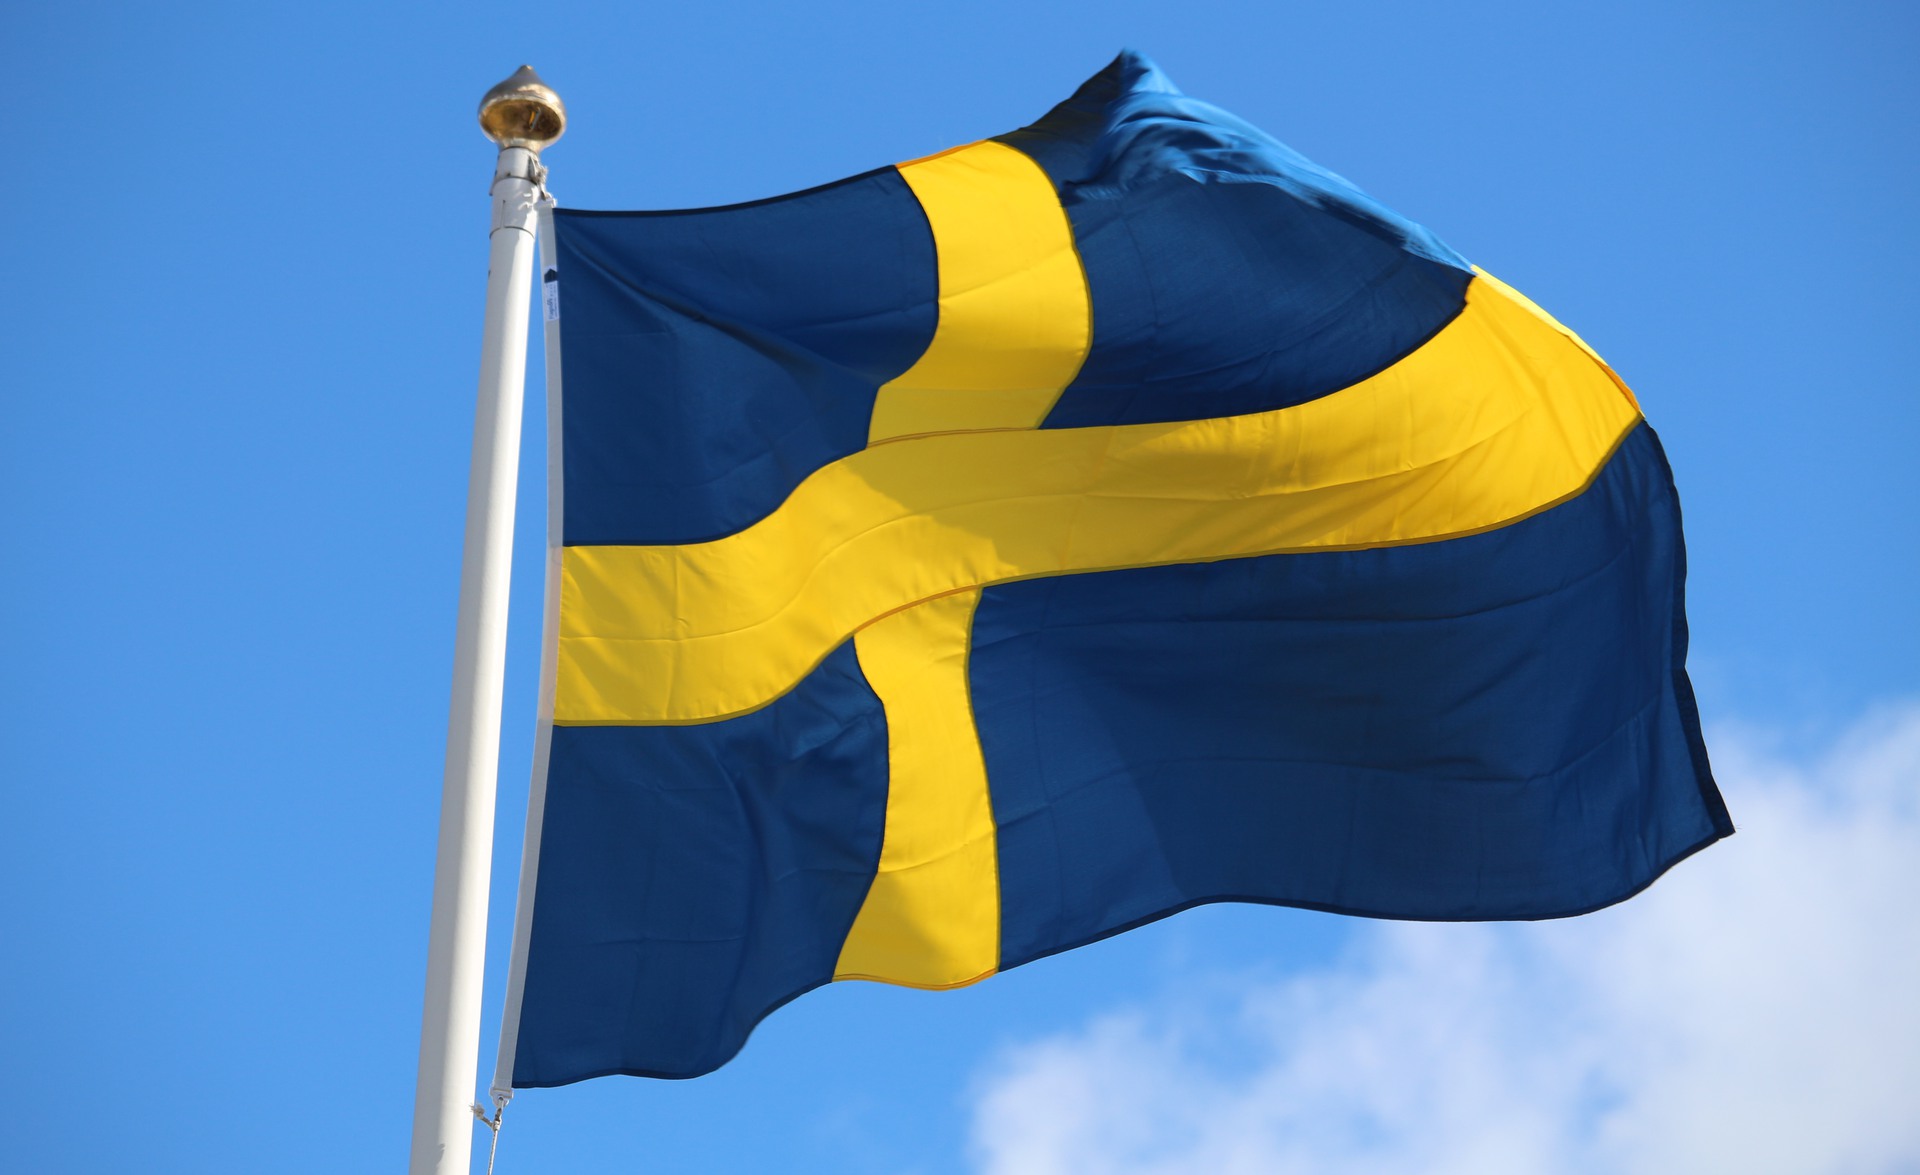 svenska flaggan vajar i vinden